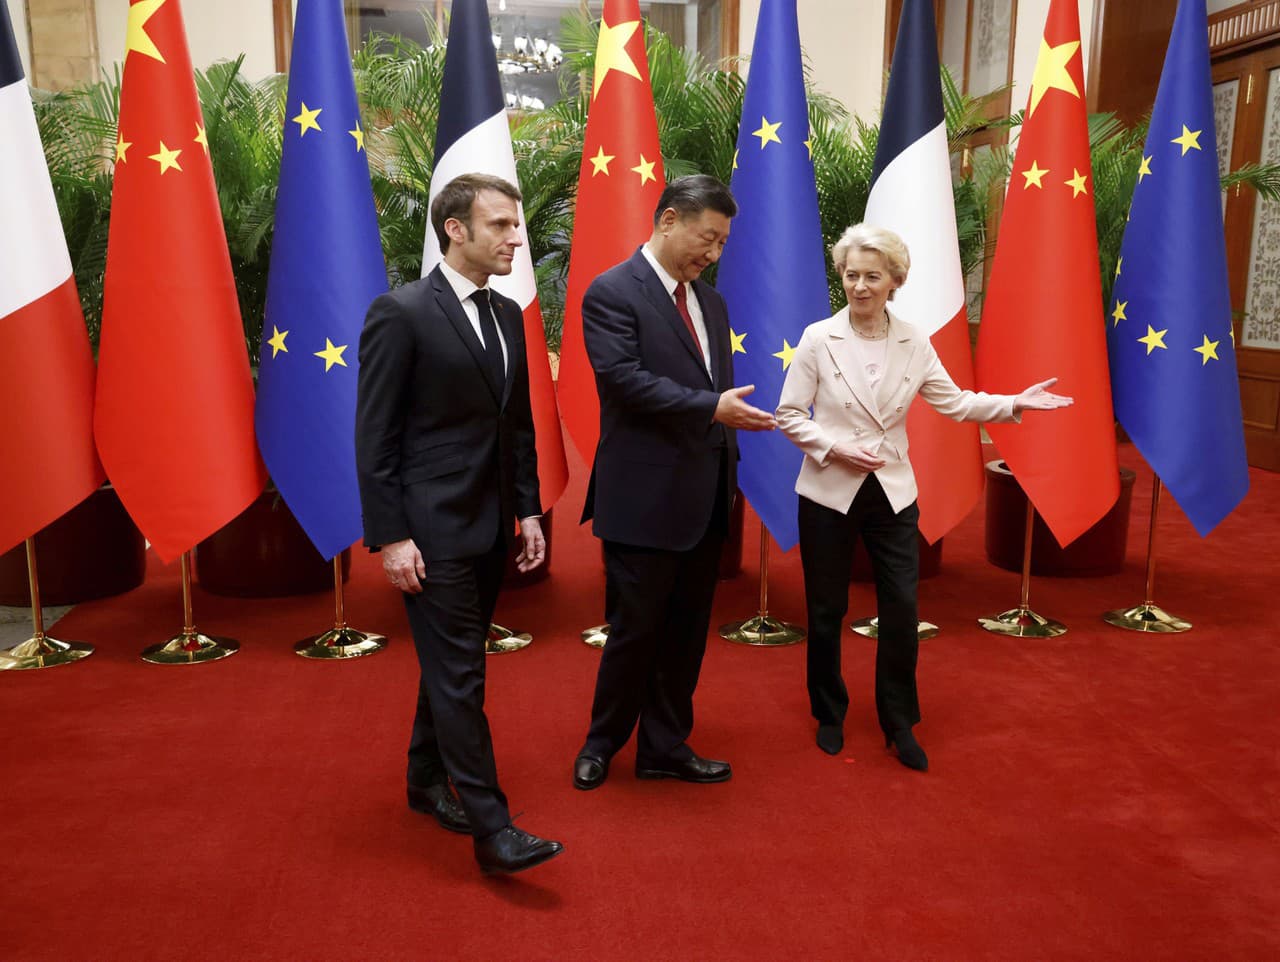 Francúzsky prezident Emanuel Macron a predsedníčka Európskej komisie Ursula von der Leyenová na oficiálnej návšteve Číny. V strede čínsky prezident Si Ťin-pching